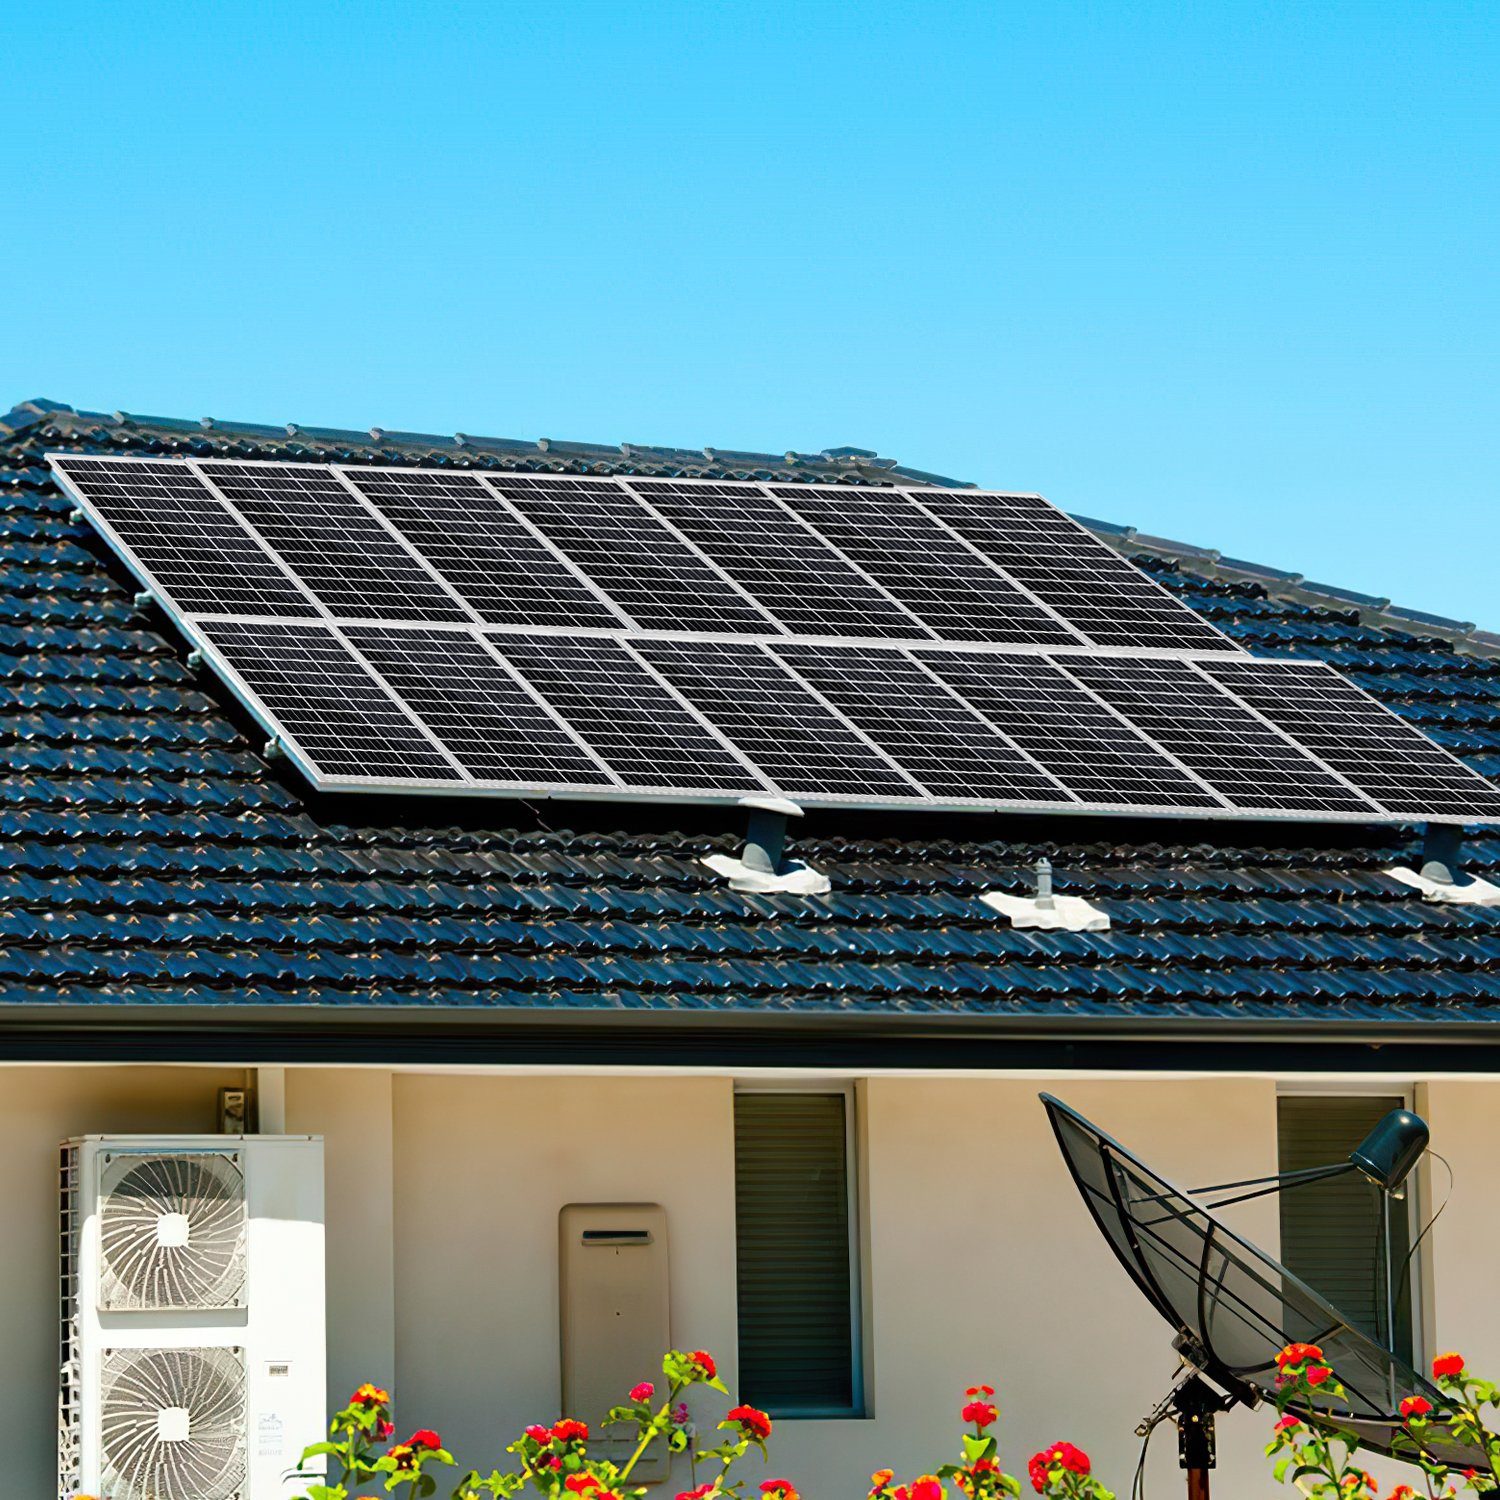 Gimisgu für 100 Camper, Solaranlage W Wohnwagen, 100W Solarpanel Solarmodul Solaranlage